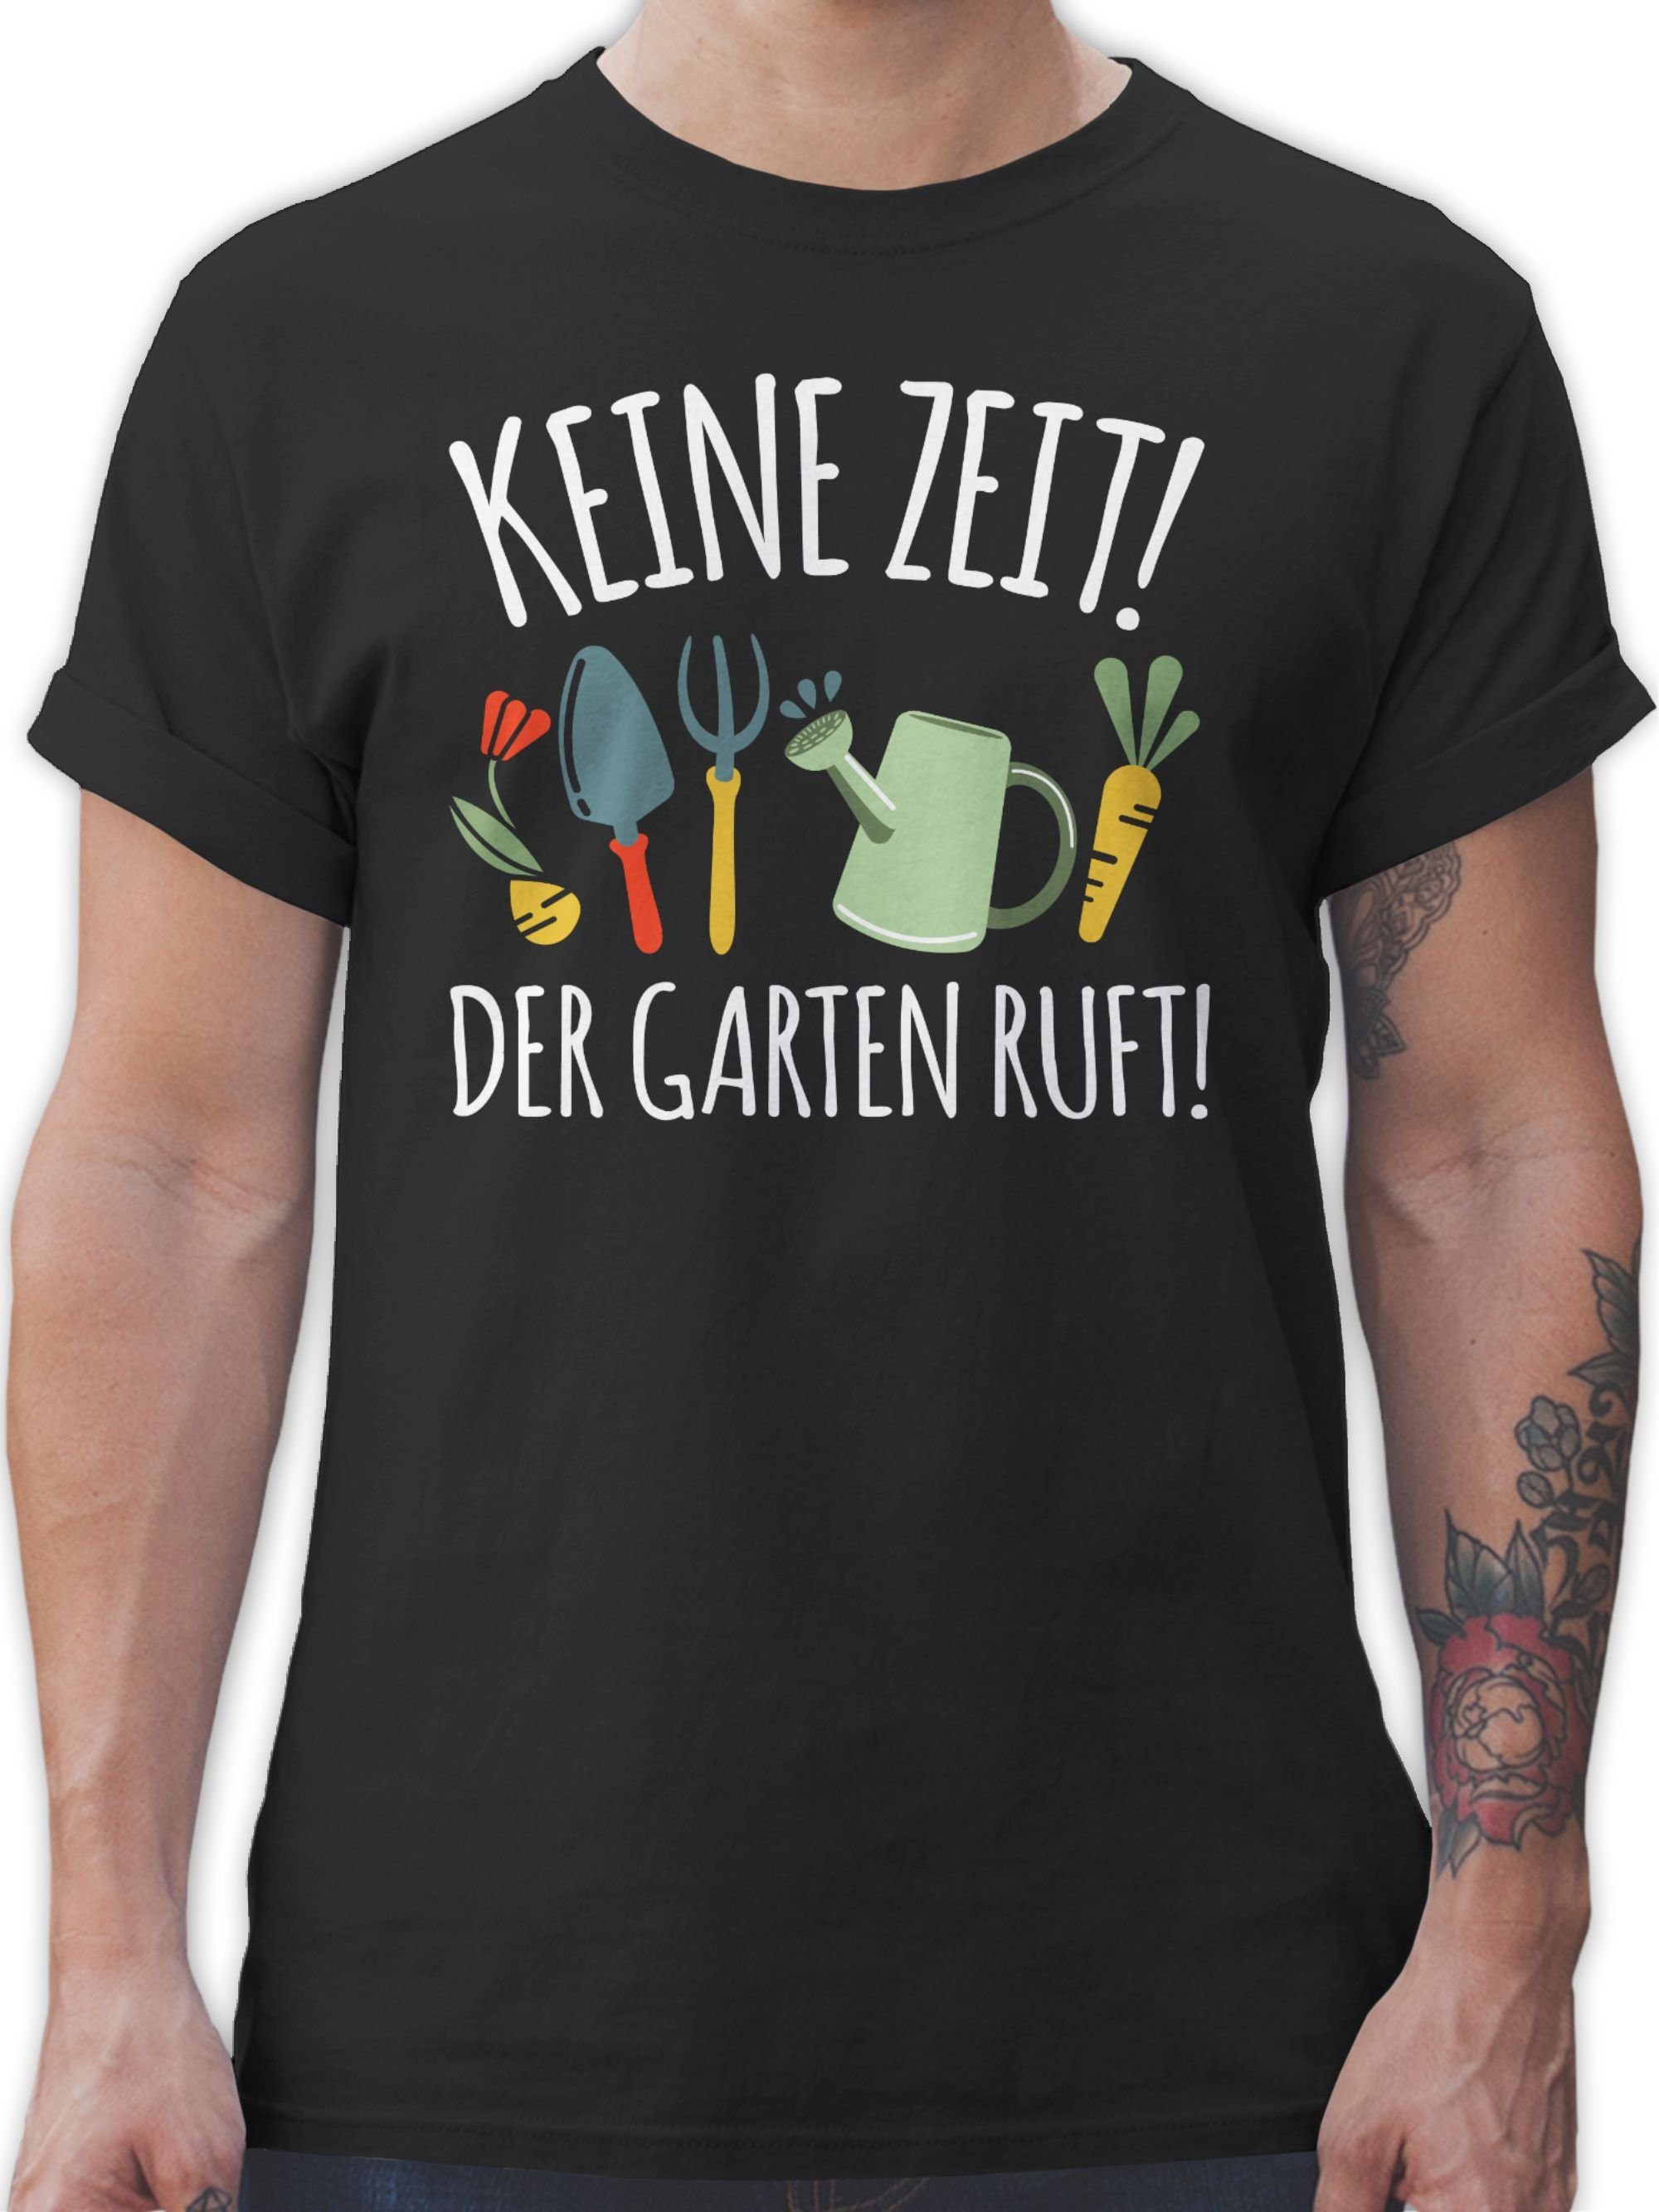 Keine Outfit weiß 1 T-Shirt Schwarz Hobby Shirtracer Garten ruft - Der Zeit!